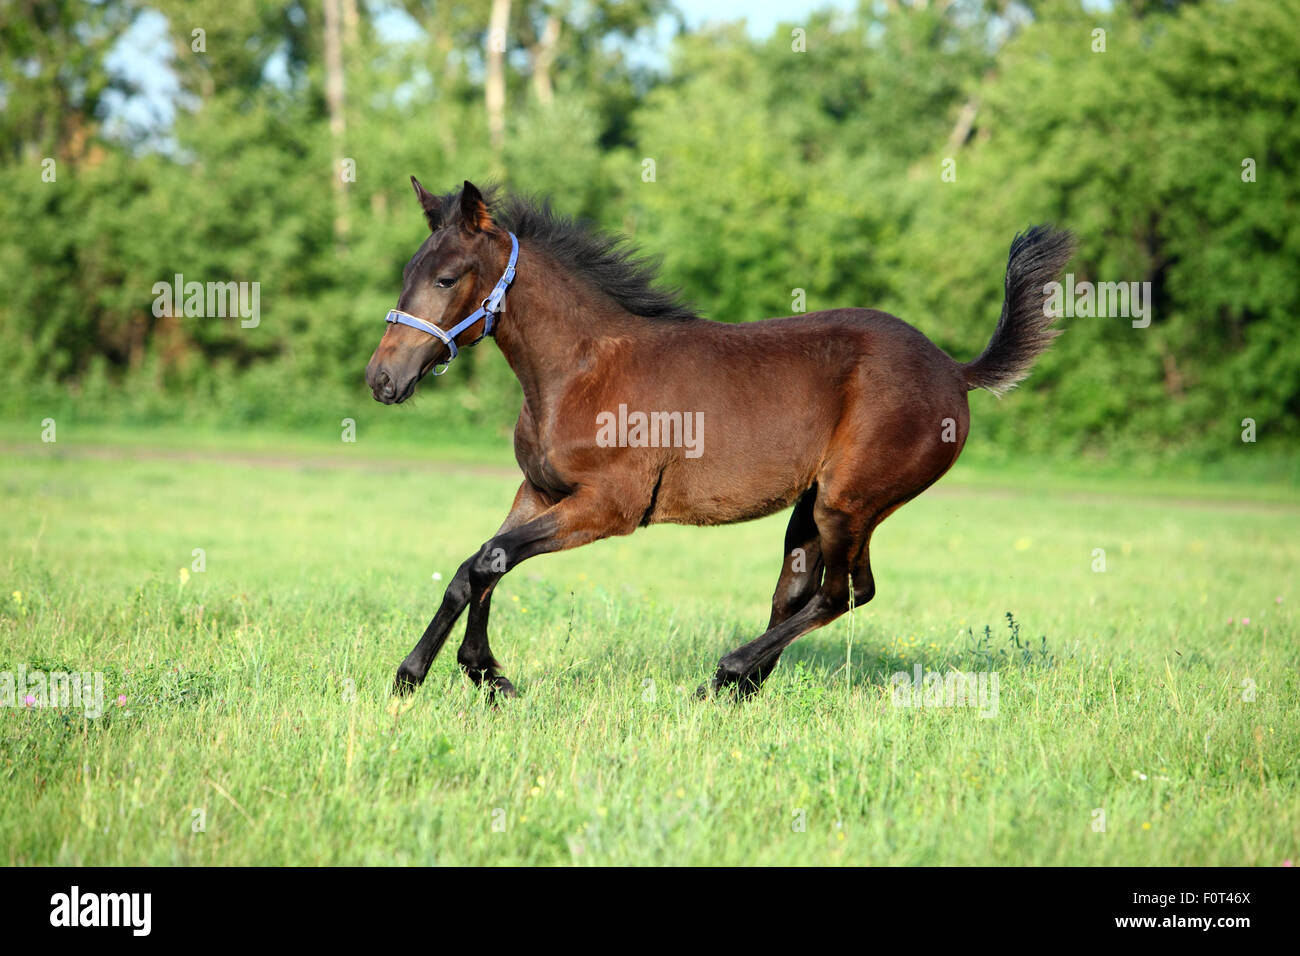 Galloping bay foal in farm Stock Photo